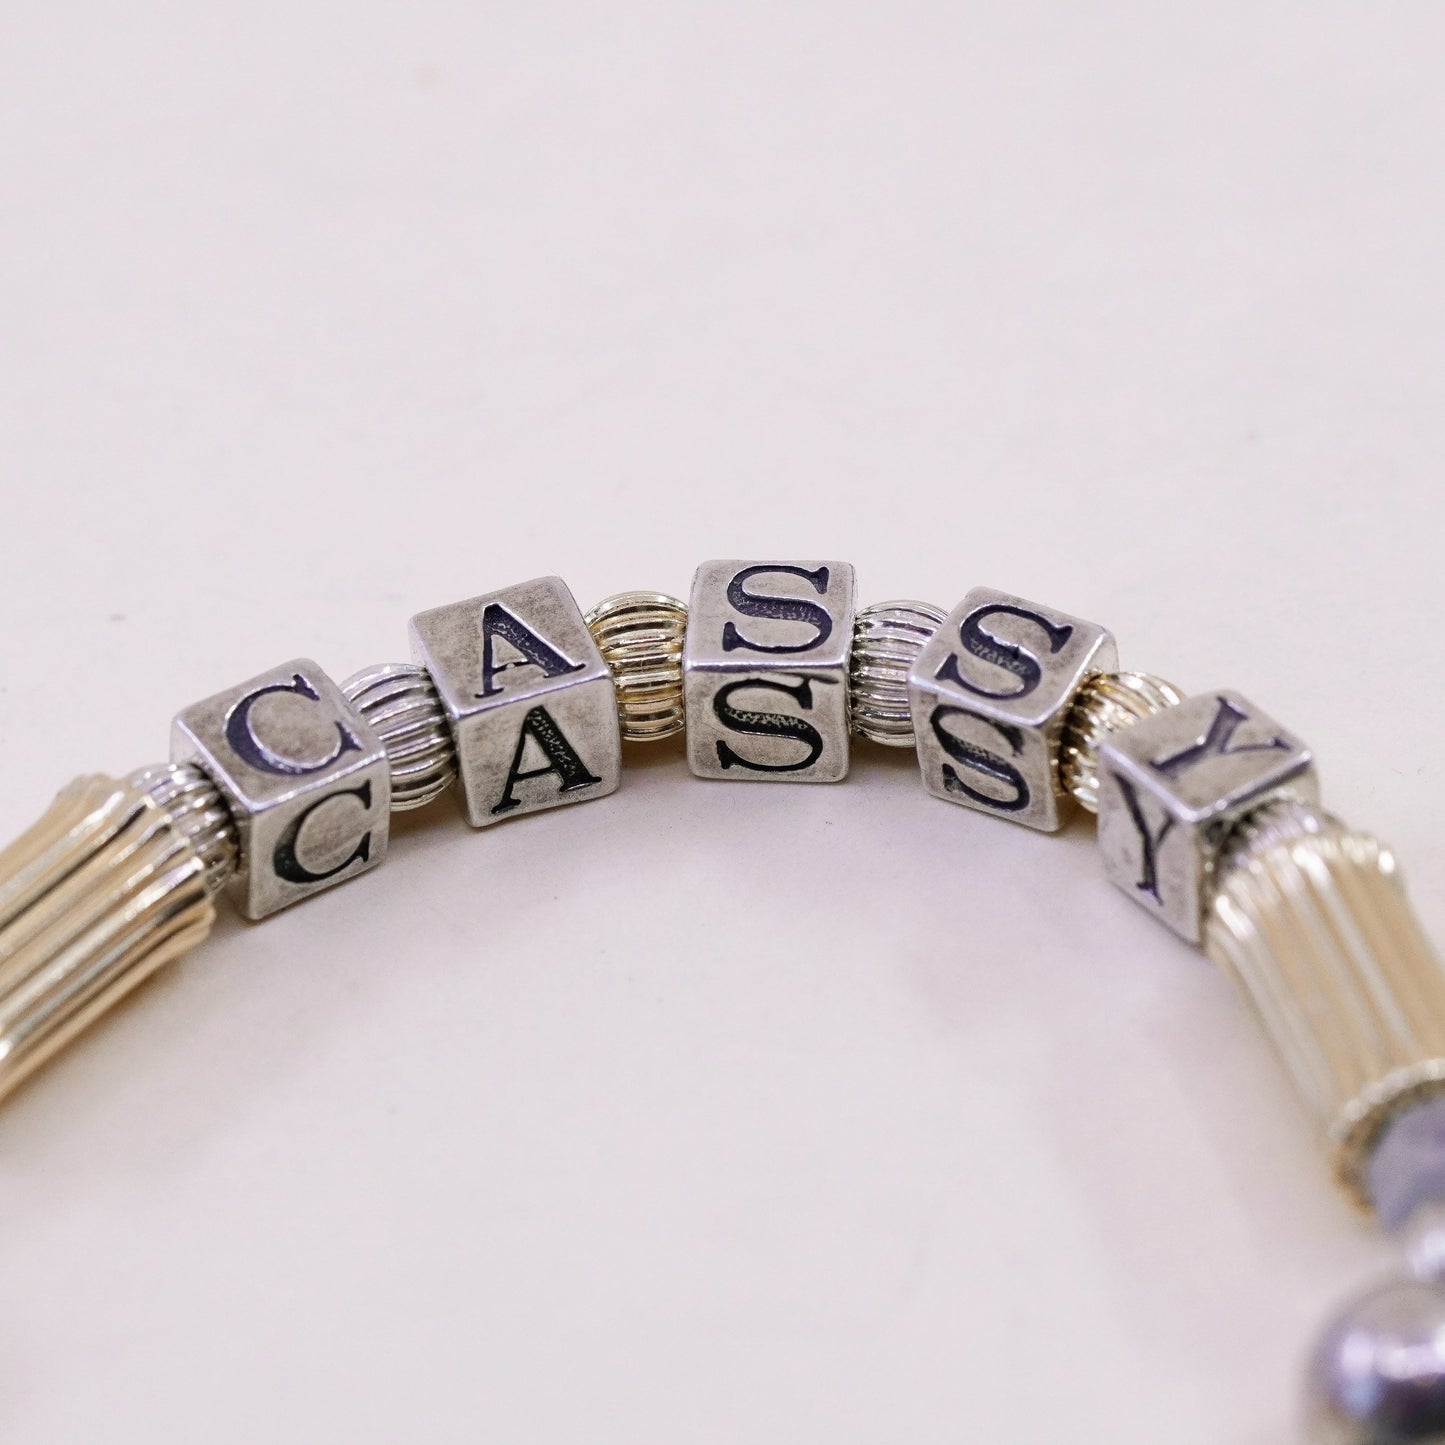 6.25”, 14K gold beads with Sterling 925 Silver bracelet name “Kayla Blake Casdy